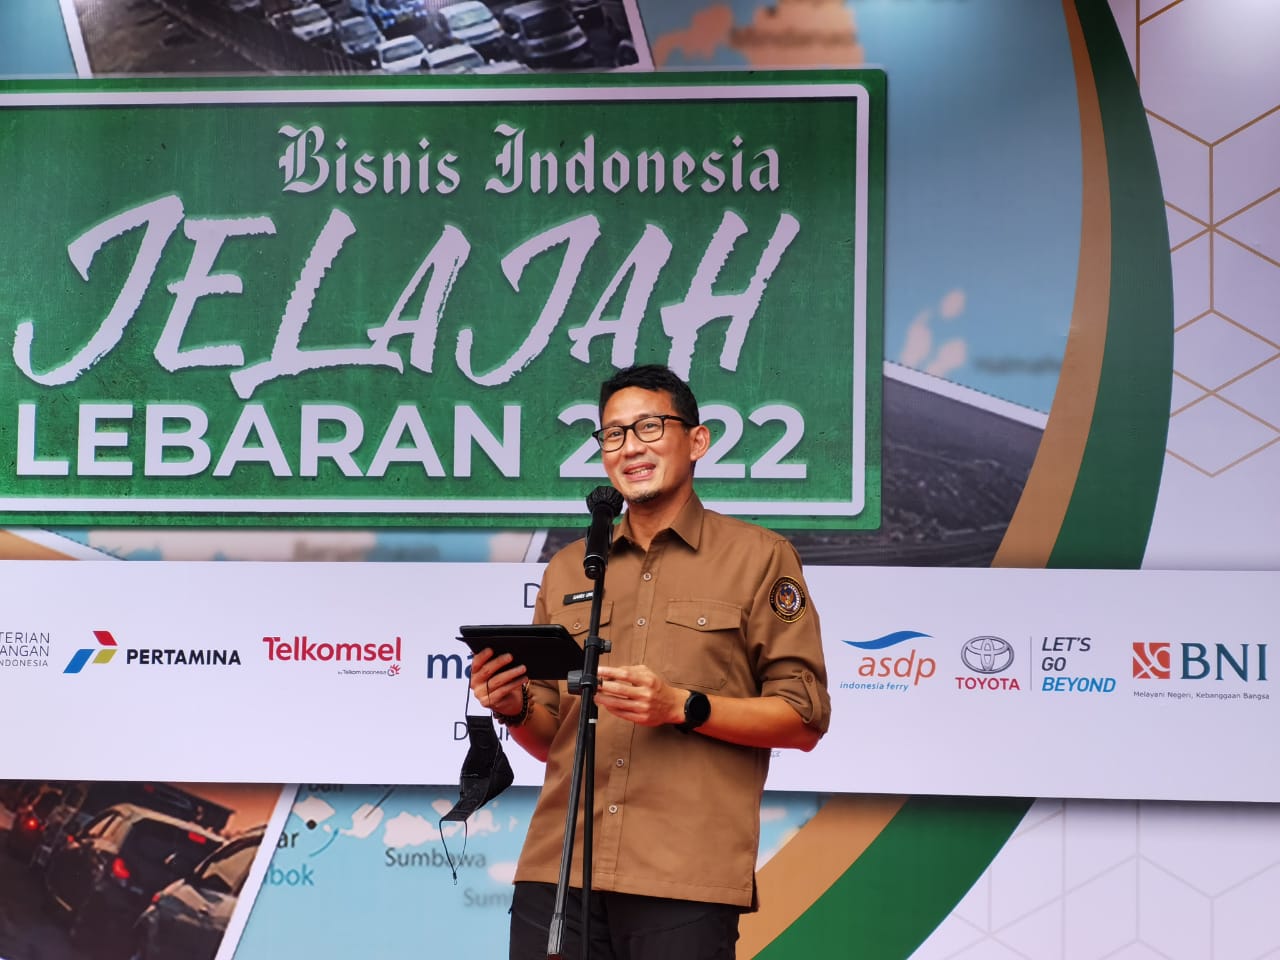 Sambutan Sandiaga Uno pada acara pelepasan Jelajah Lebaran 2022 Bisnis Indonesia (Sumber gambar: Hypeabis.id/Syaiful)